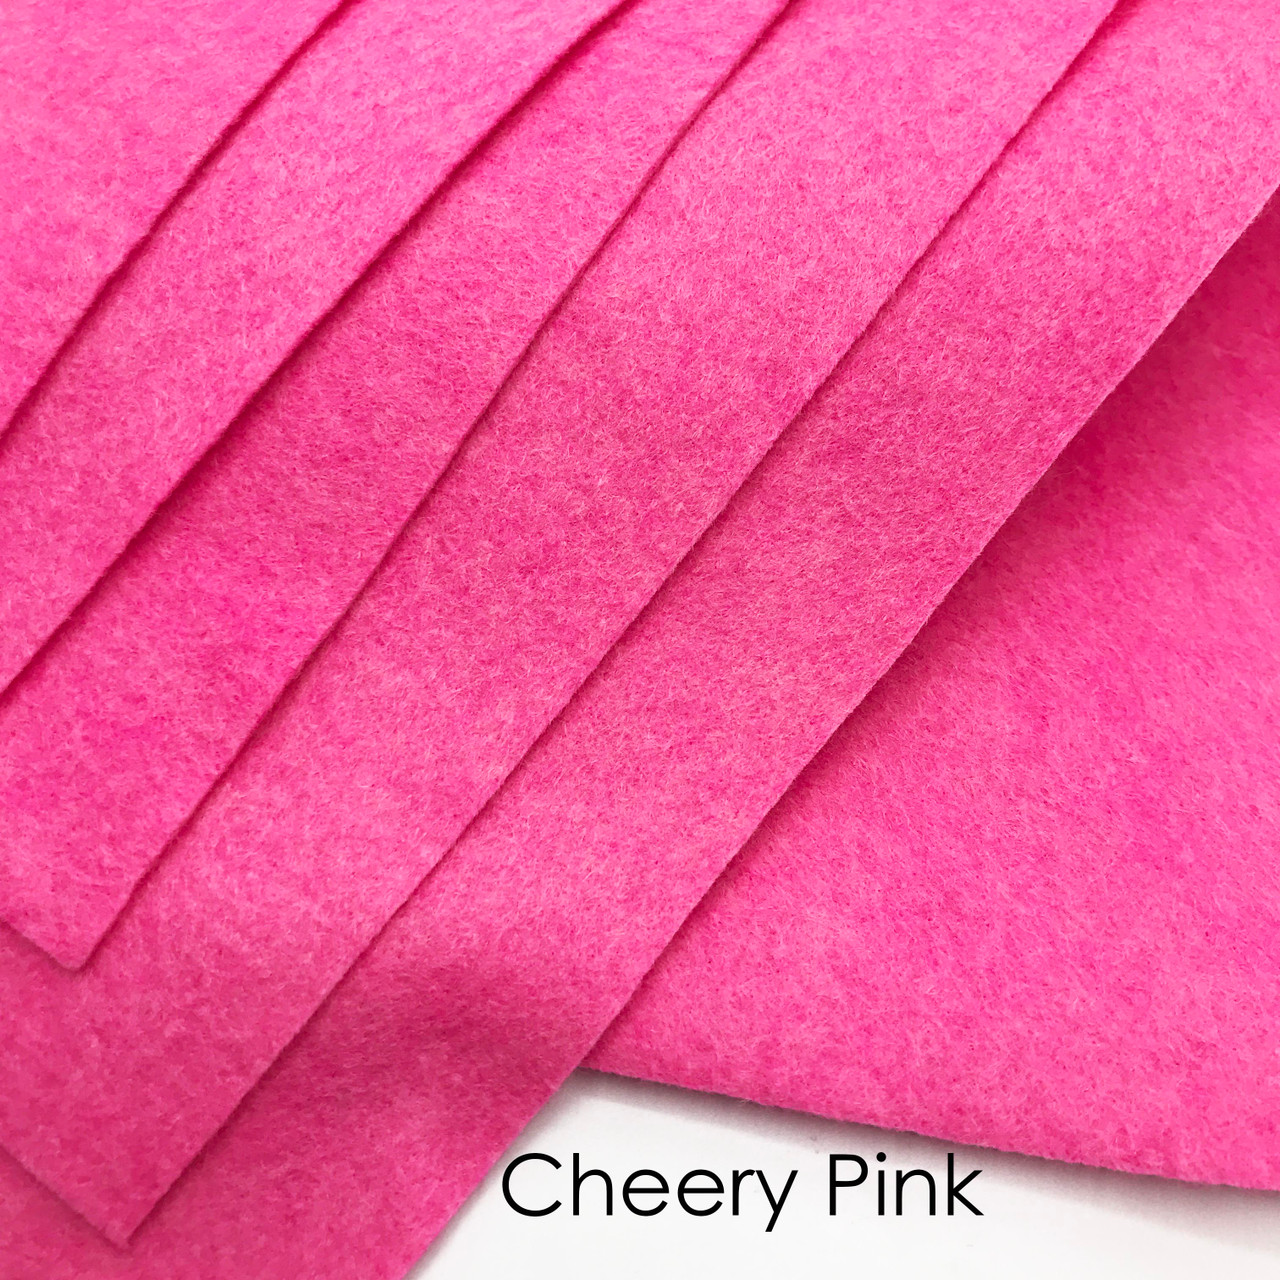 Coral Pink Felt Sheet, Pink Wool Felt